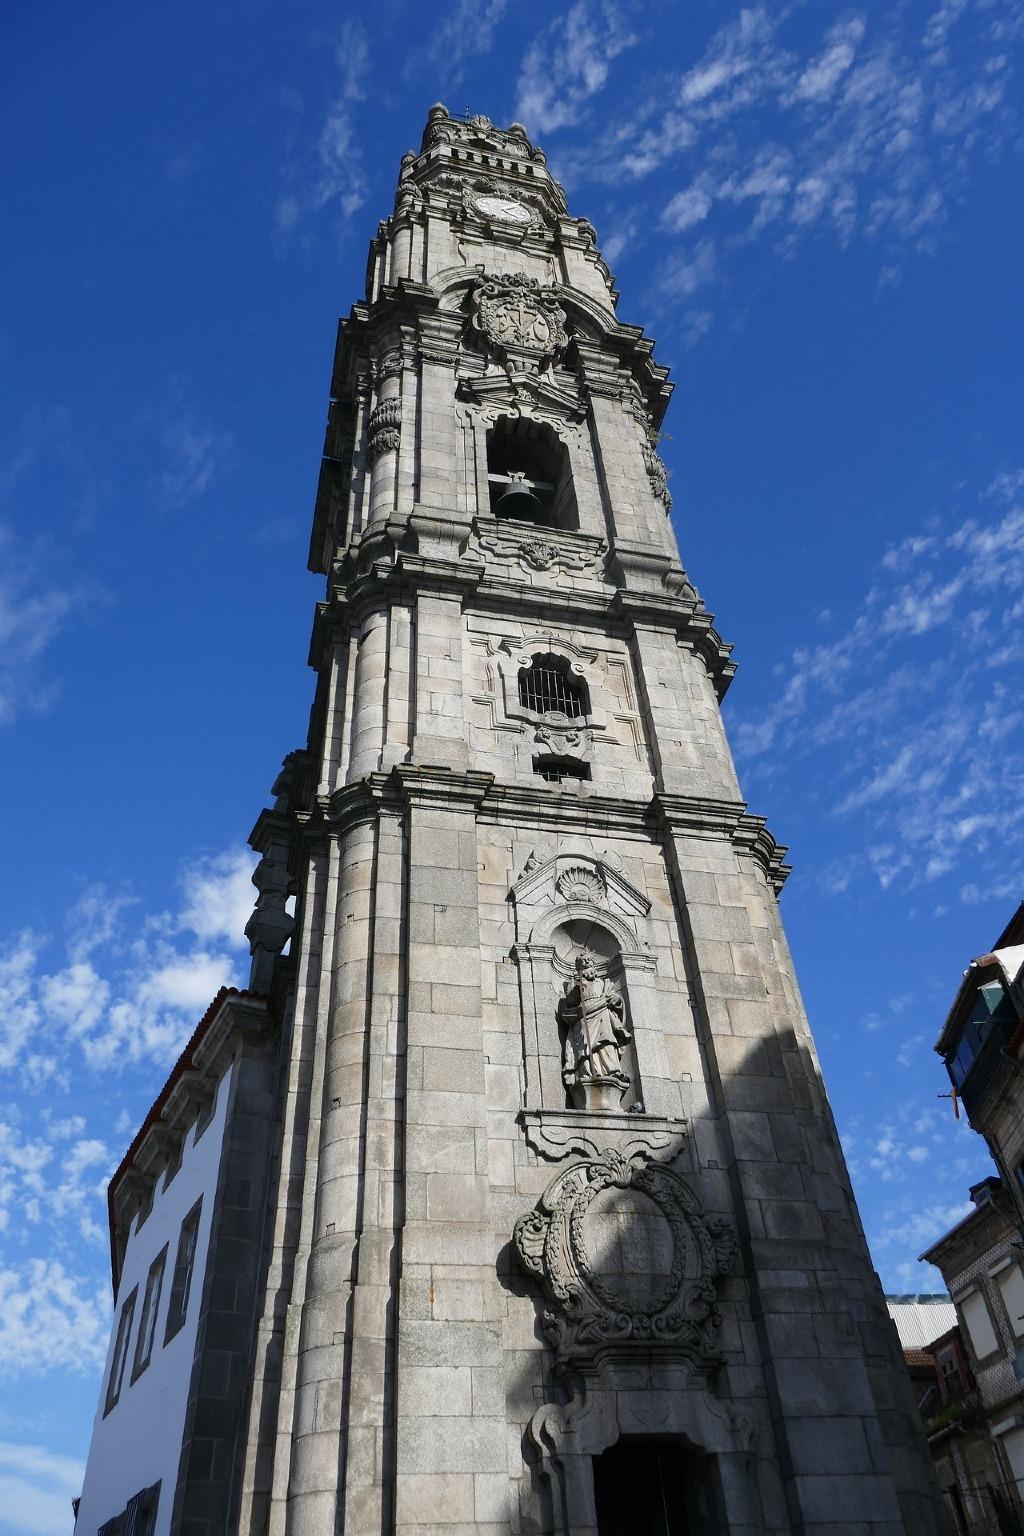 Torre de los Clérigos, monumento emblemático de Oporto, Portugal, una perspectiva desde la parte inferior del monumento